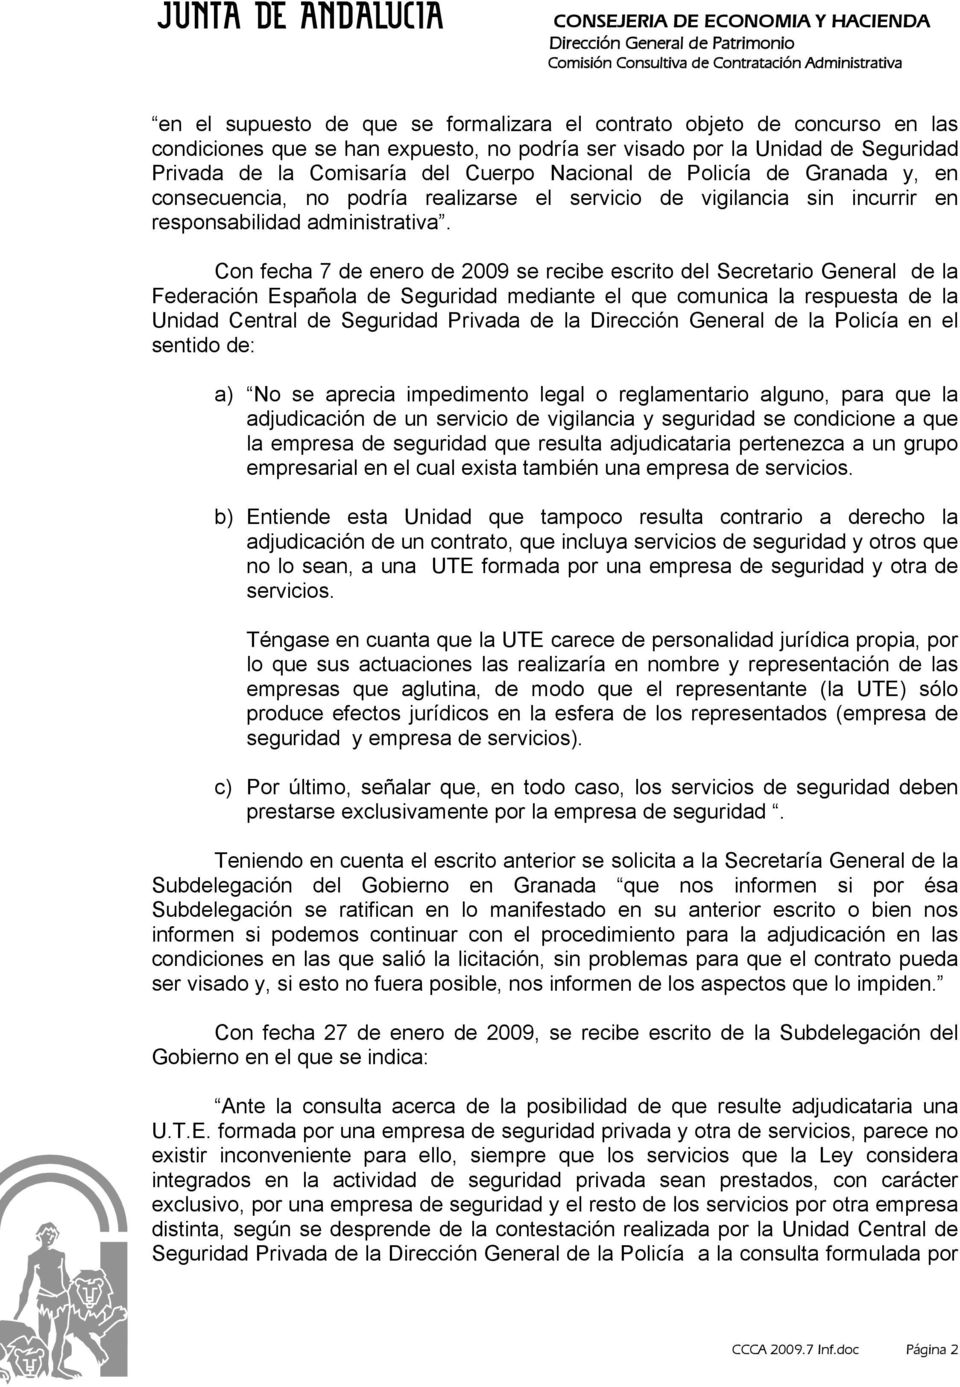 Con fecha 7 de enero de 2009 se recibe escrito del Secretario General de la Federación Española de Seguridad mediante el que comunica la respuesta de la Unidad Central de Seguridad Privada de la